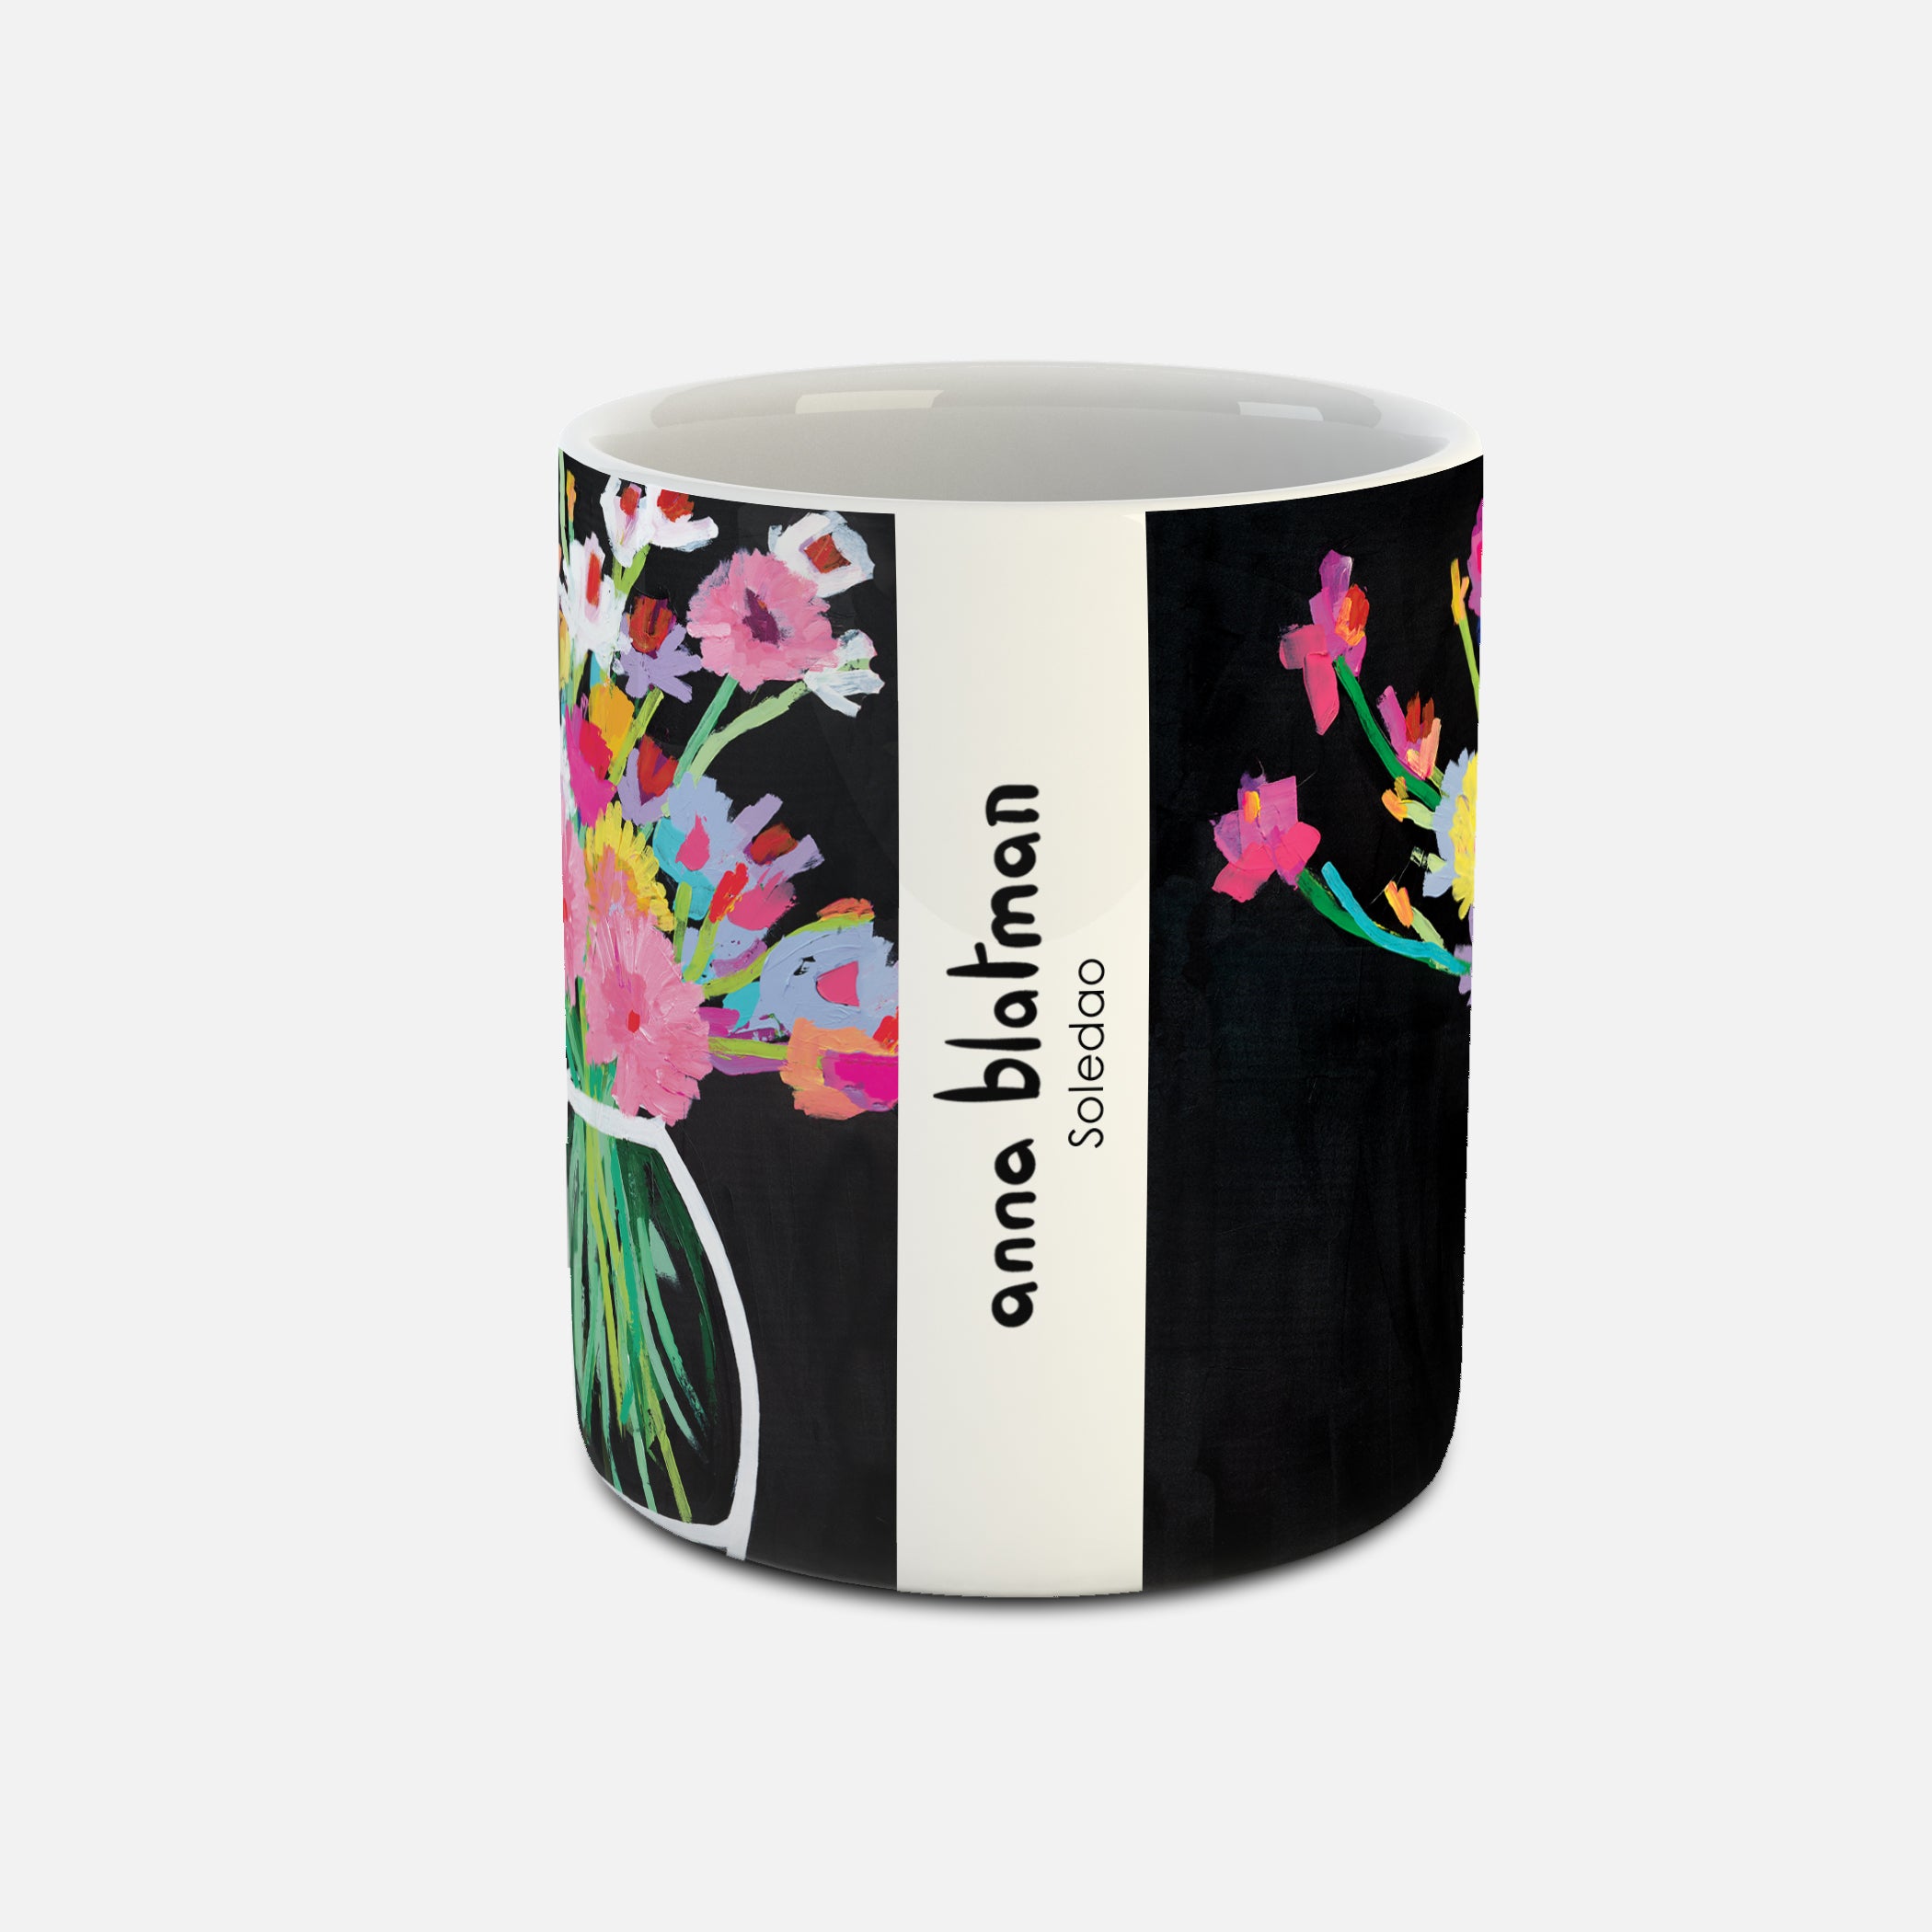 Soledao - Ceramic Mug